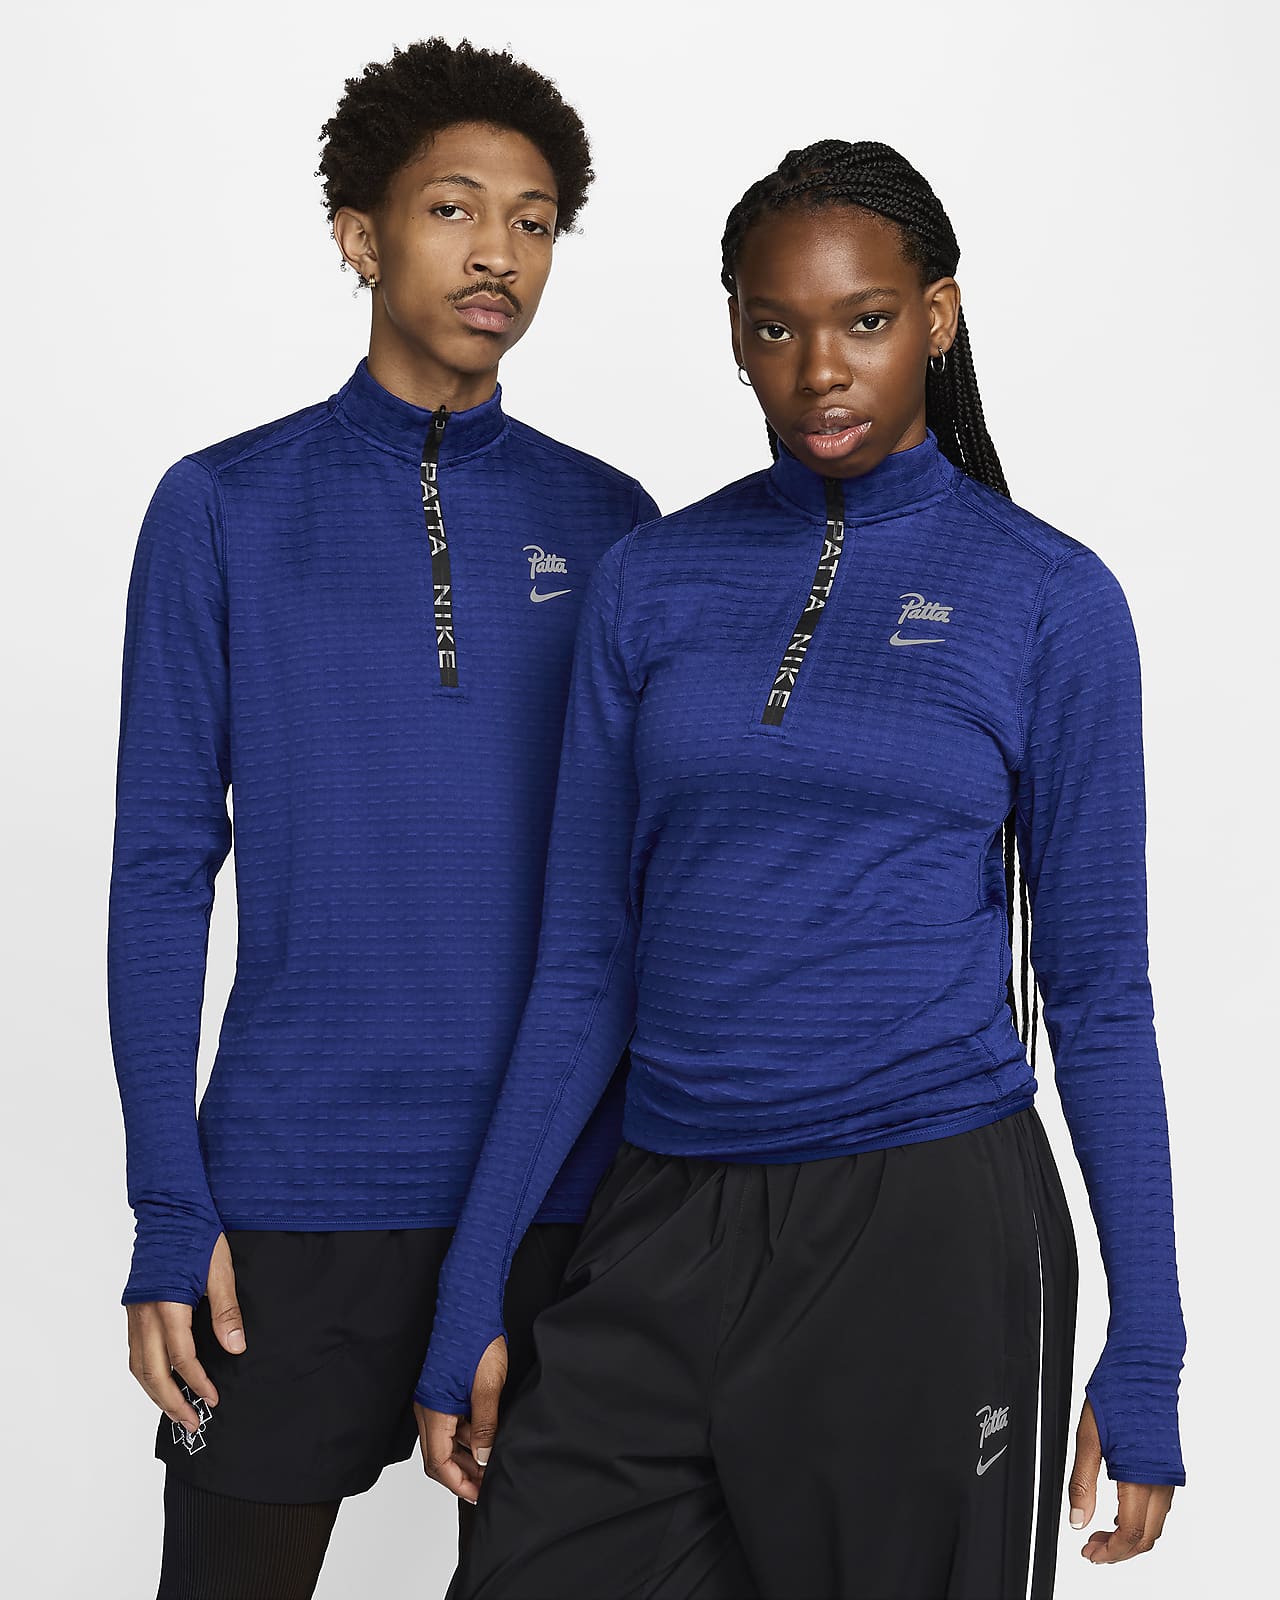 Camisola de manga comprida com fecho até meio Nike x Patta Running Team